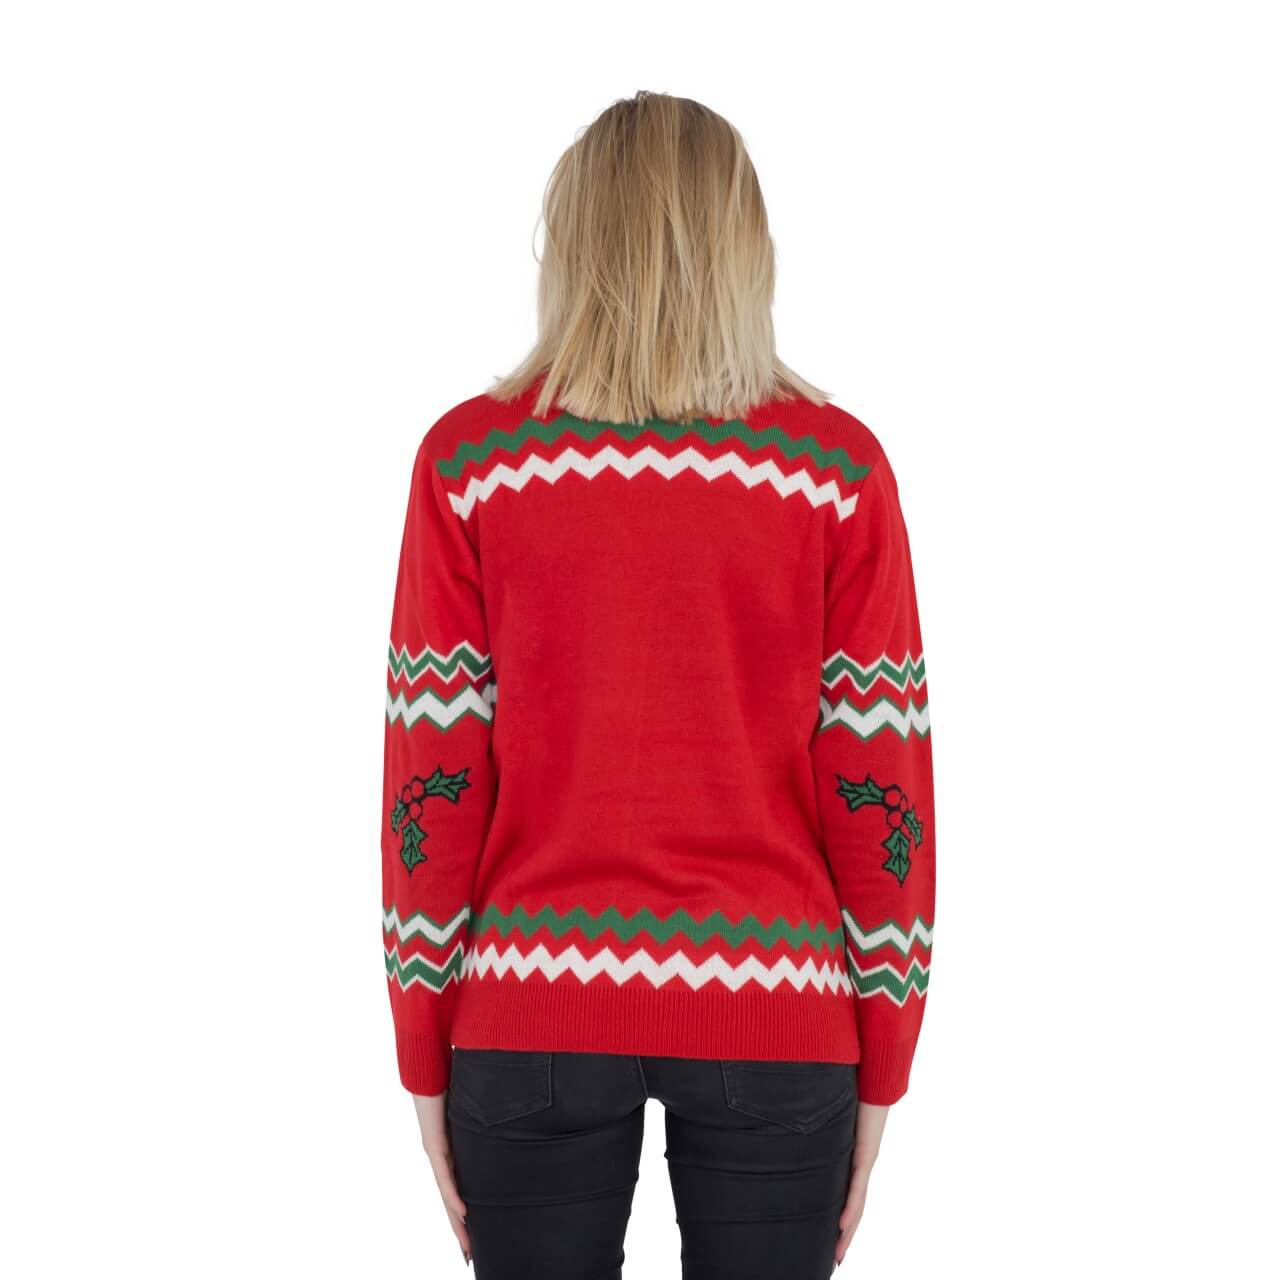 Women’s Let’s Get Elfed Up Drunken Elves Ugly Christmas Sweater Back